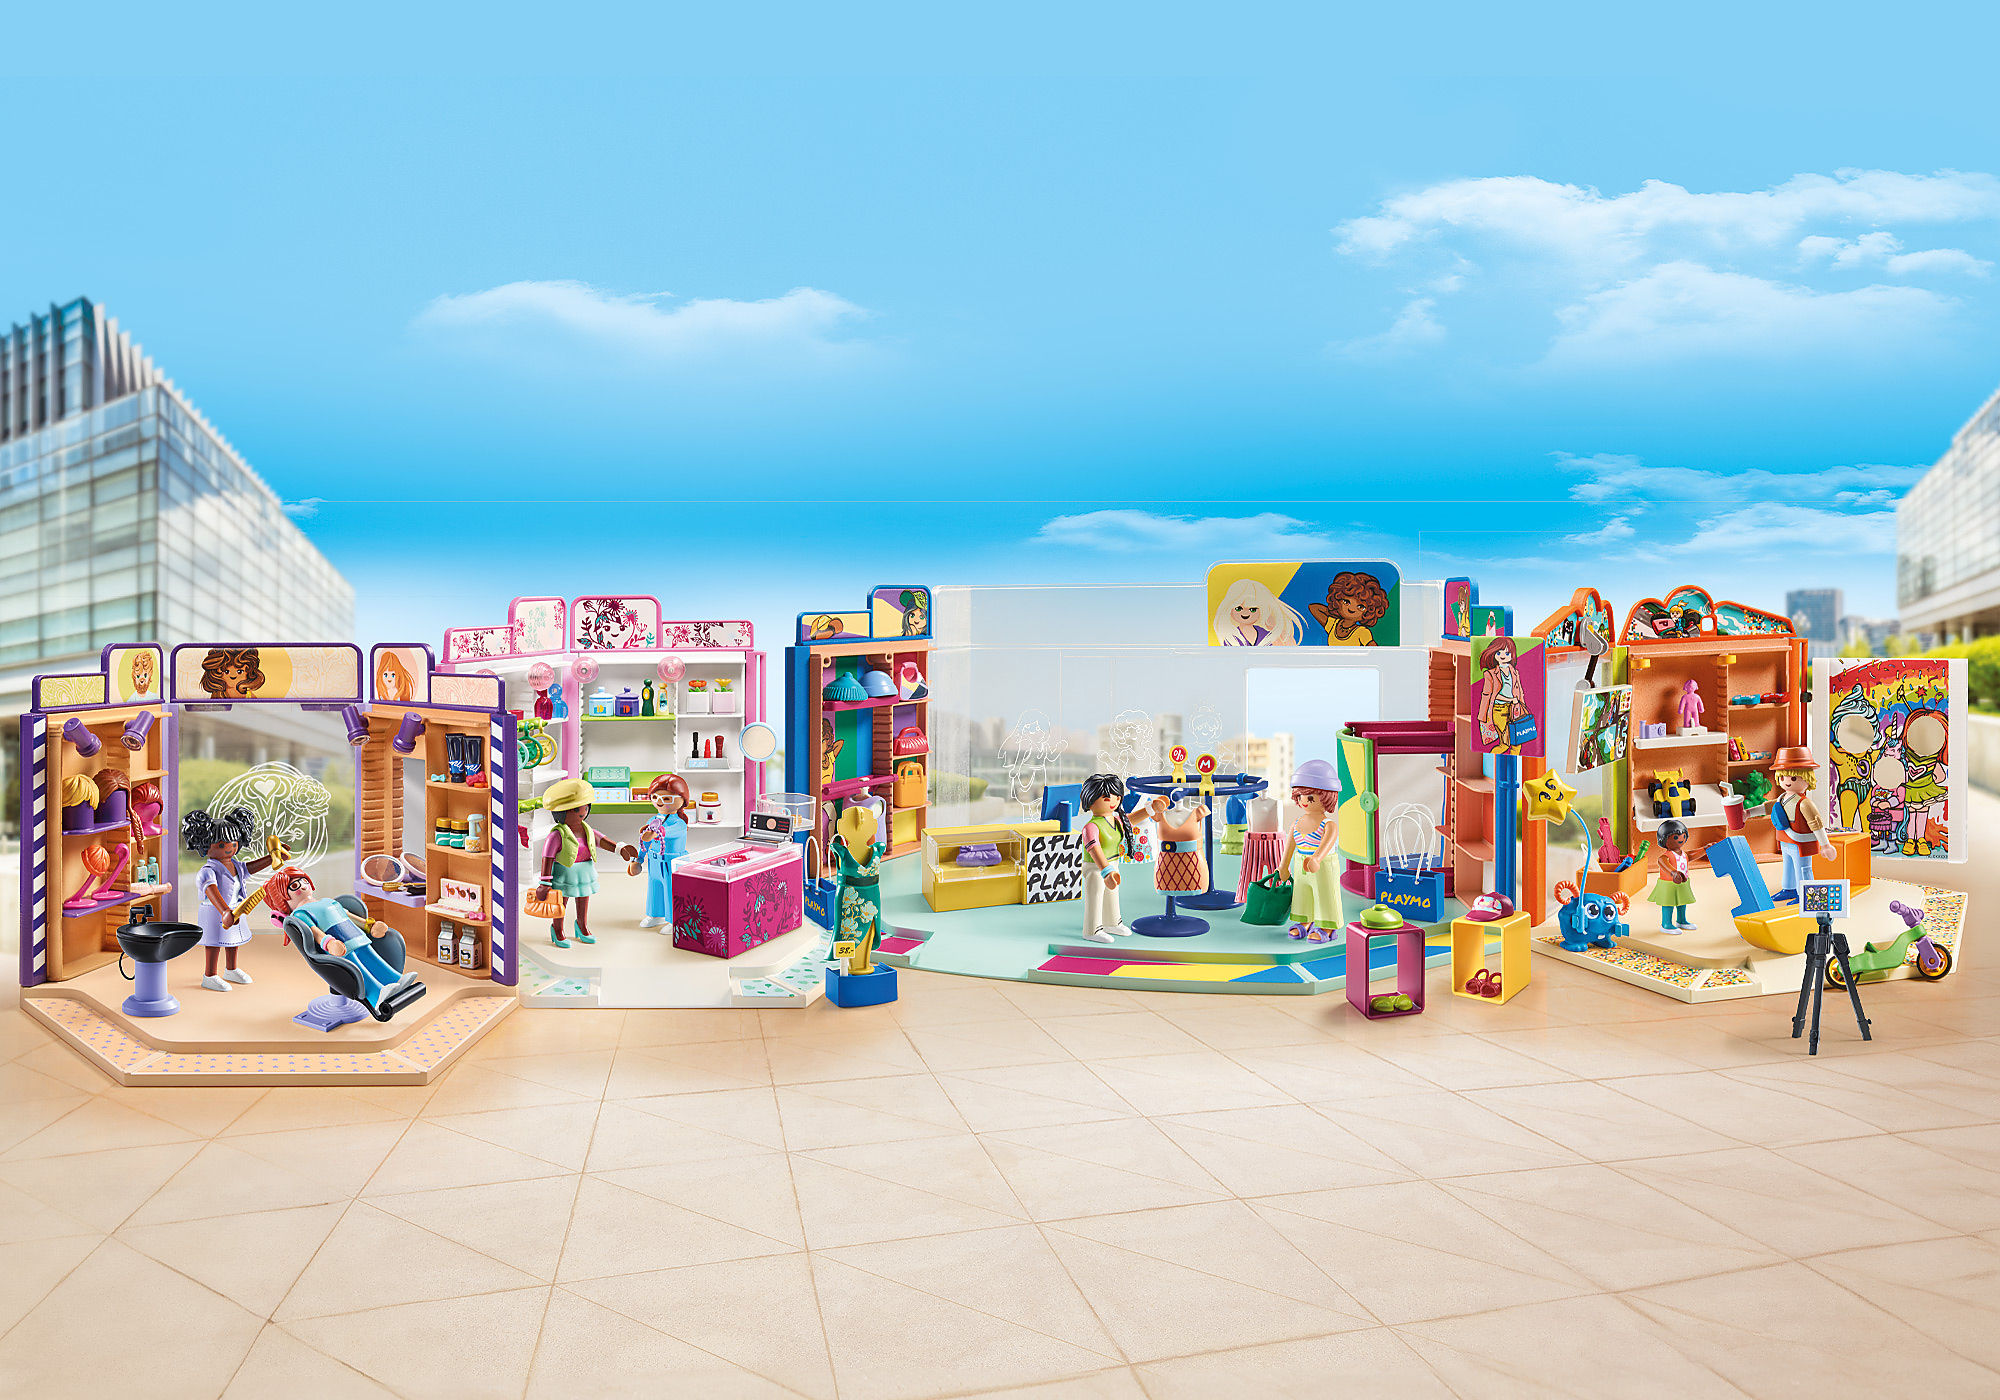 Salon de coiffure playmobil - Playmobil